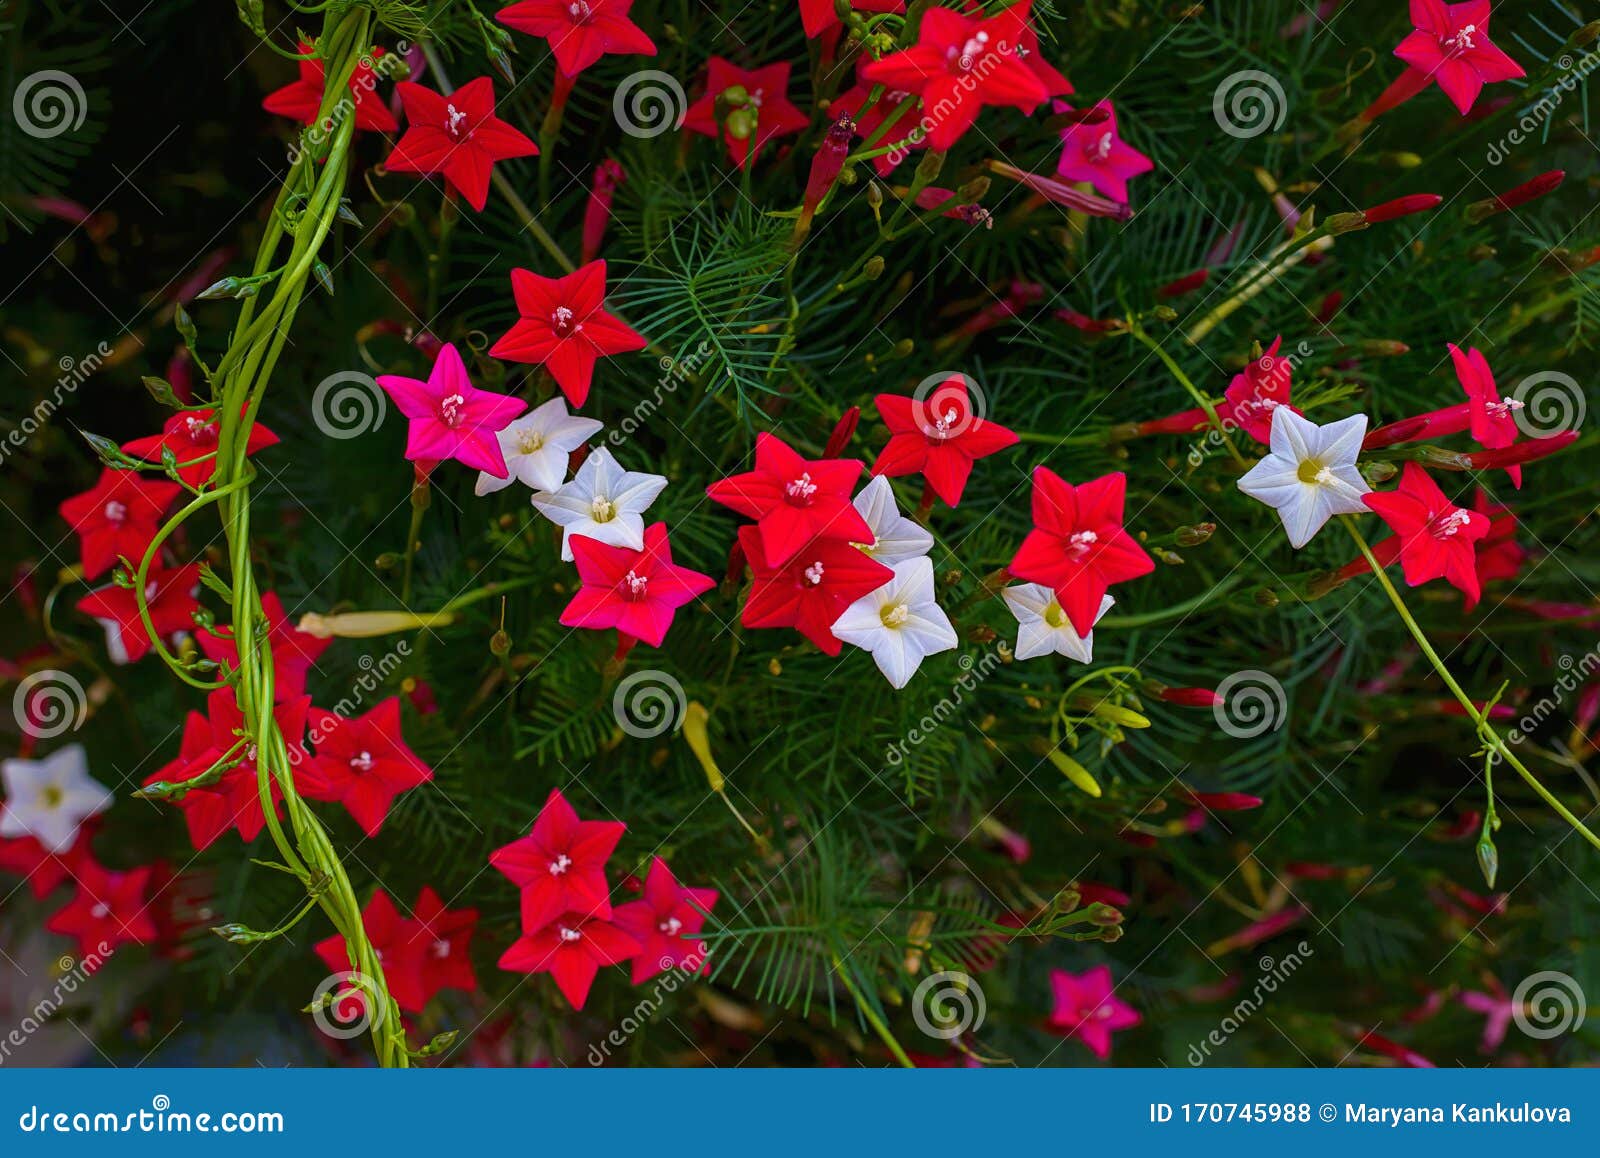 Ipomoea Quamoclit Cypress Planta Tropical En Forma De Estrella Blanca,  Escarlata Y Rosa Foto de archivo - Imagen de color, fondo: 170745988